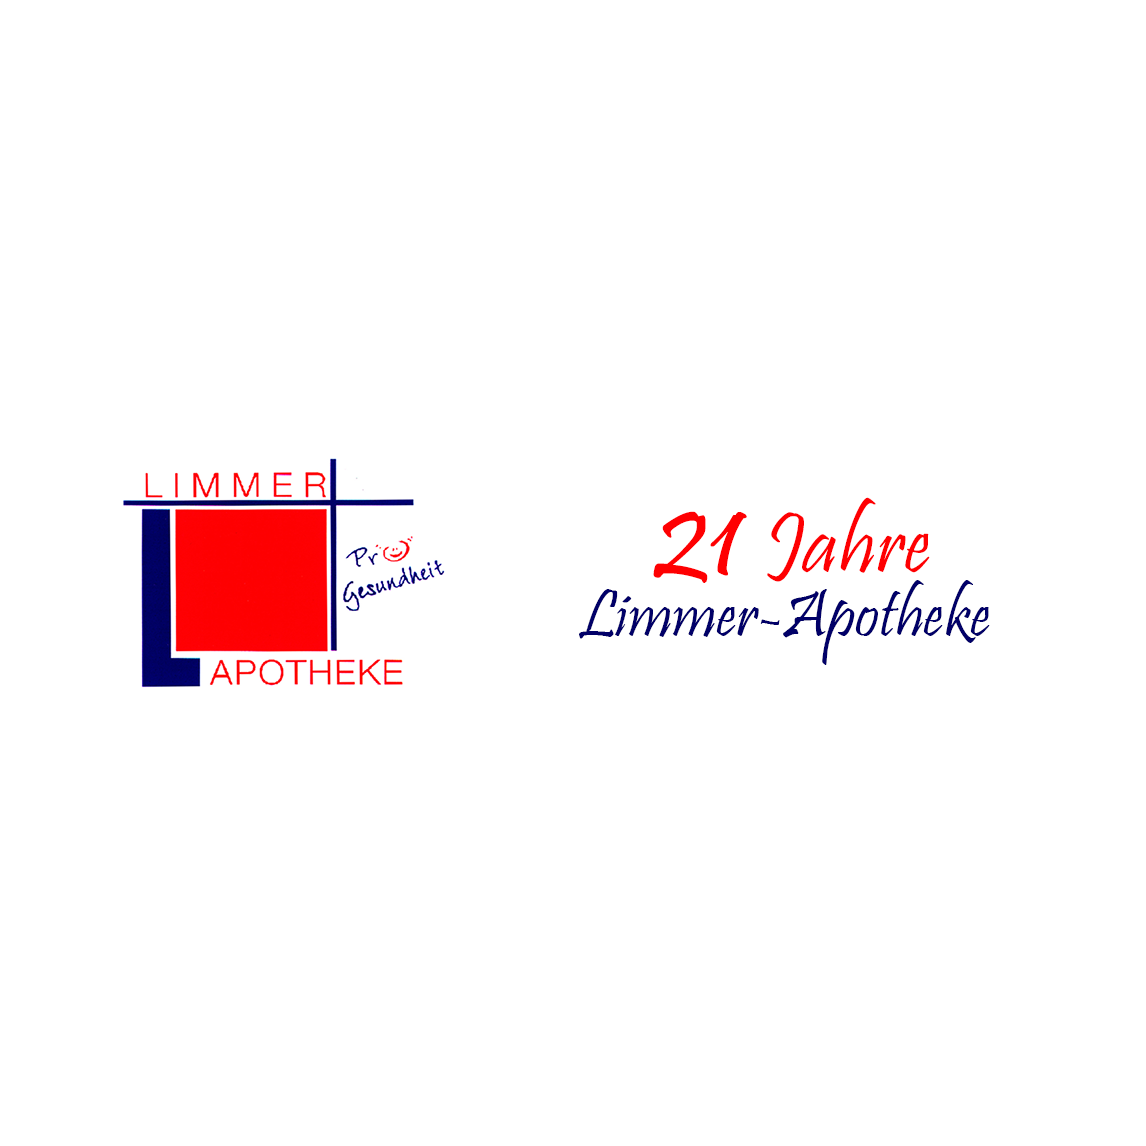 Limmer-Apotheke in Hannover - Logo